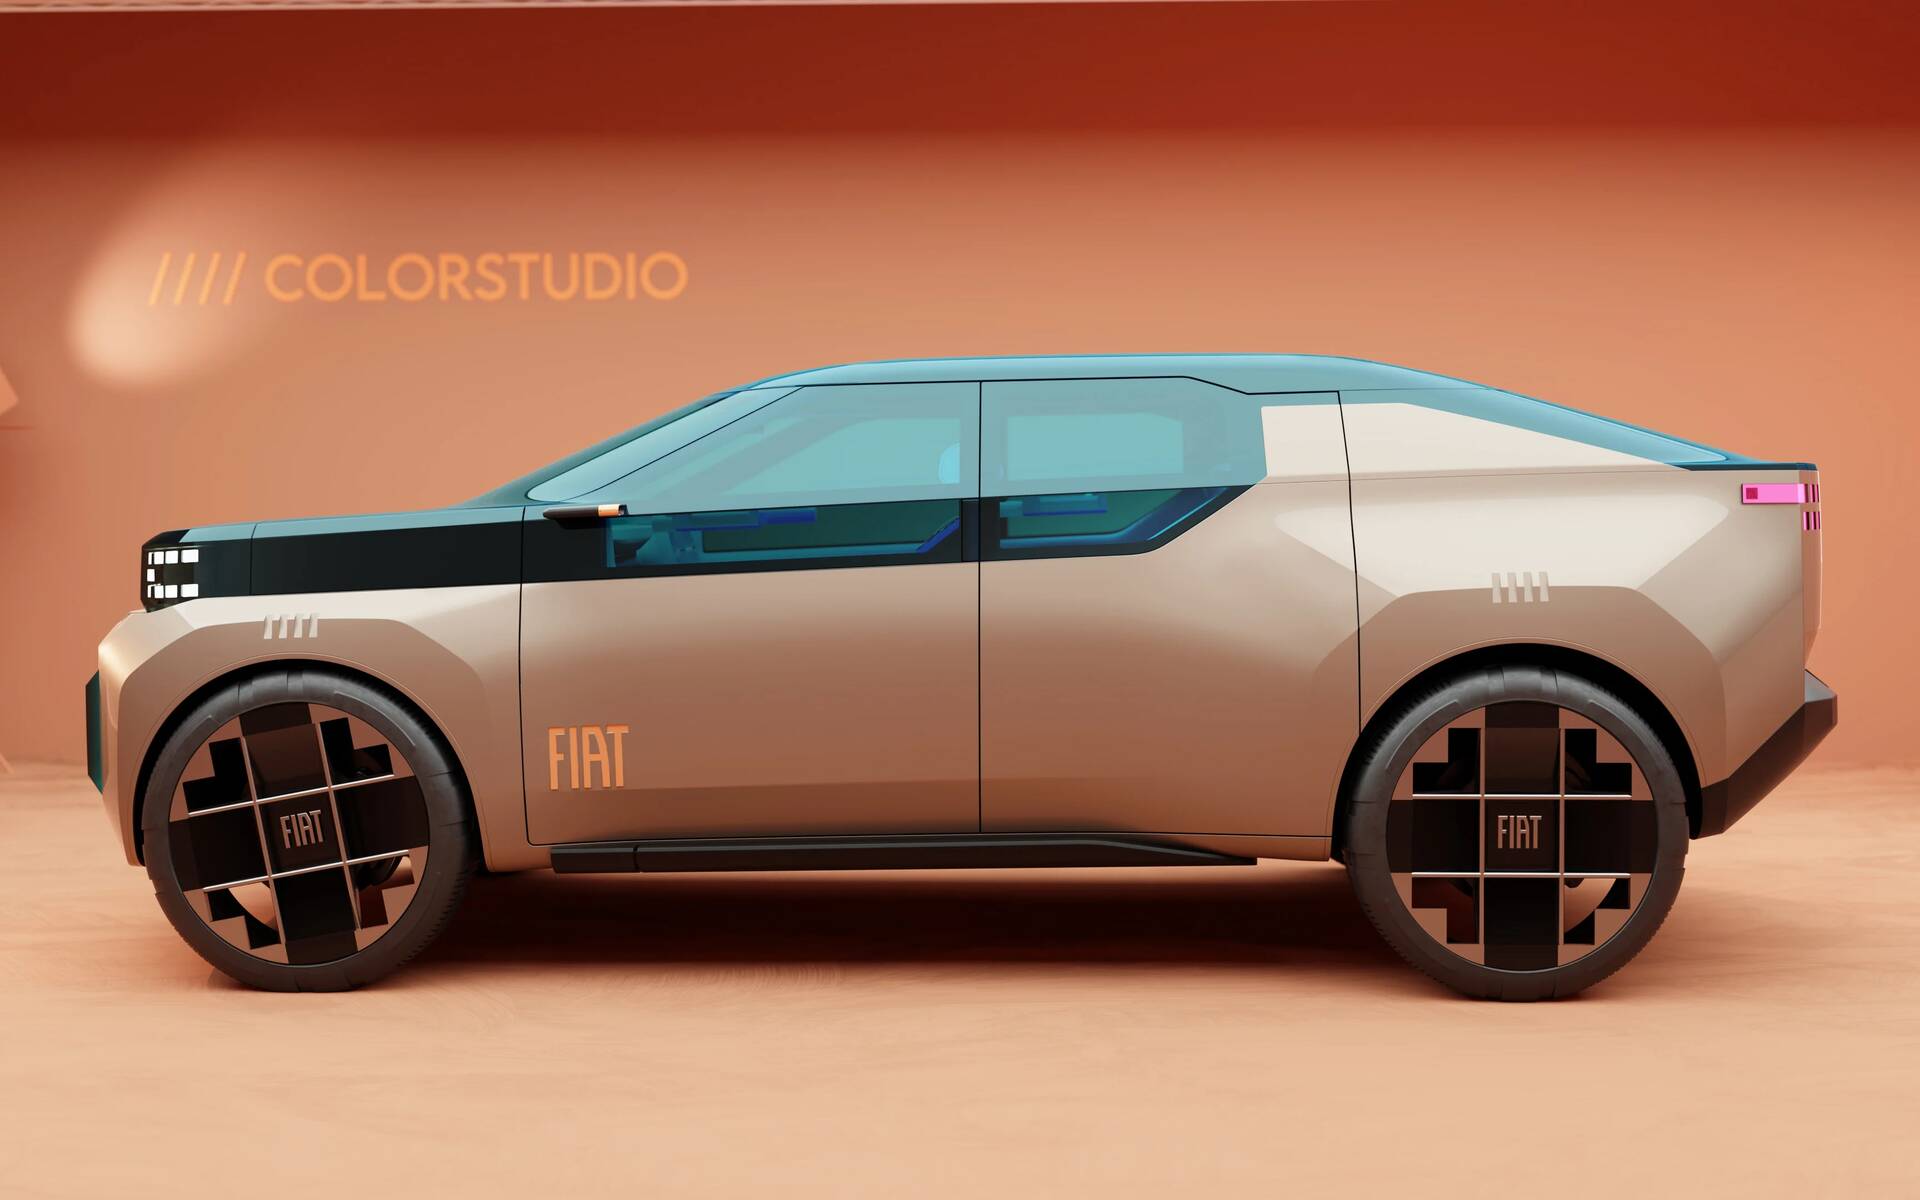 En images : Fiat dévoile 5 concepts colorés inspirées de la Panda 609531-en-images-fiat-devoile-5-concepts-colores-inspirees-de-la-panda